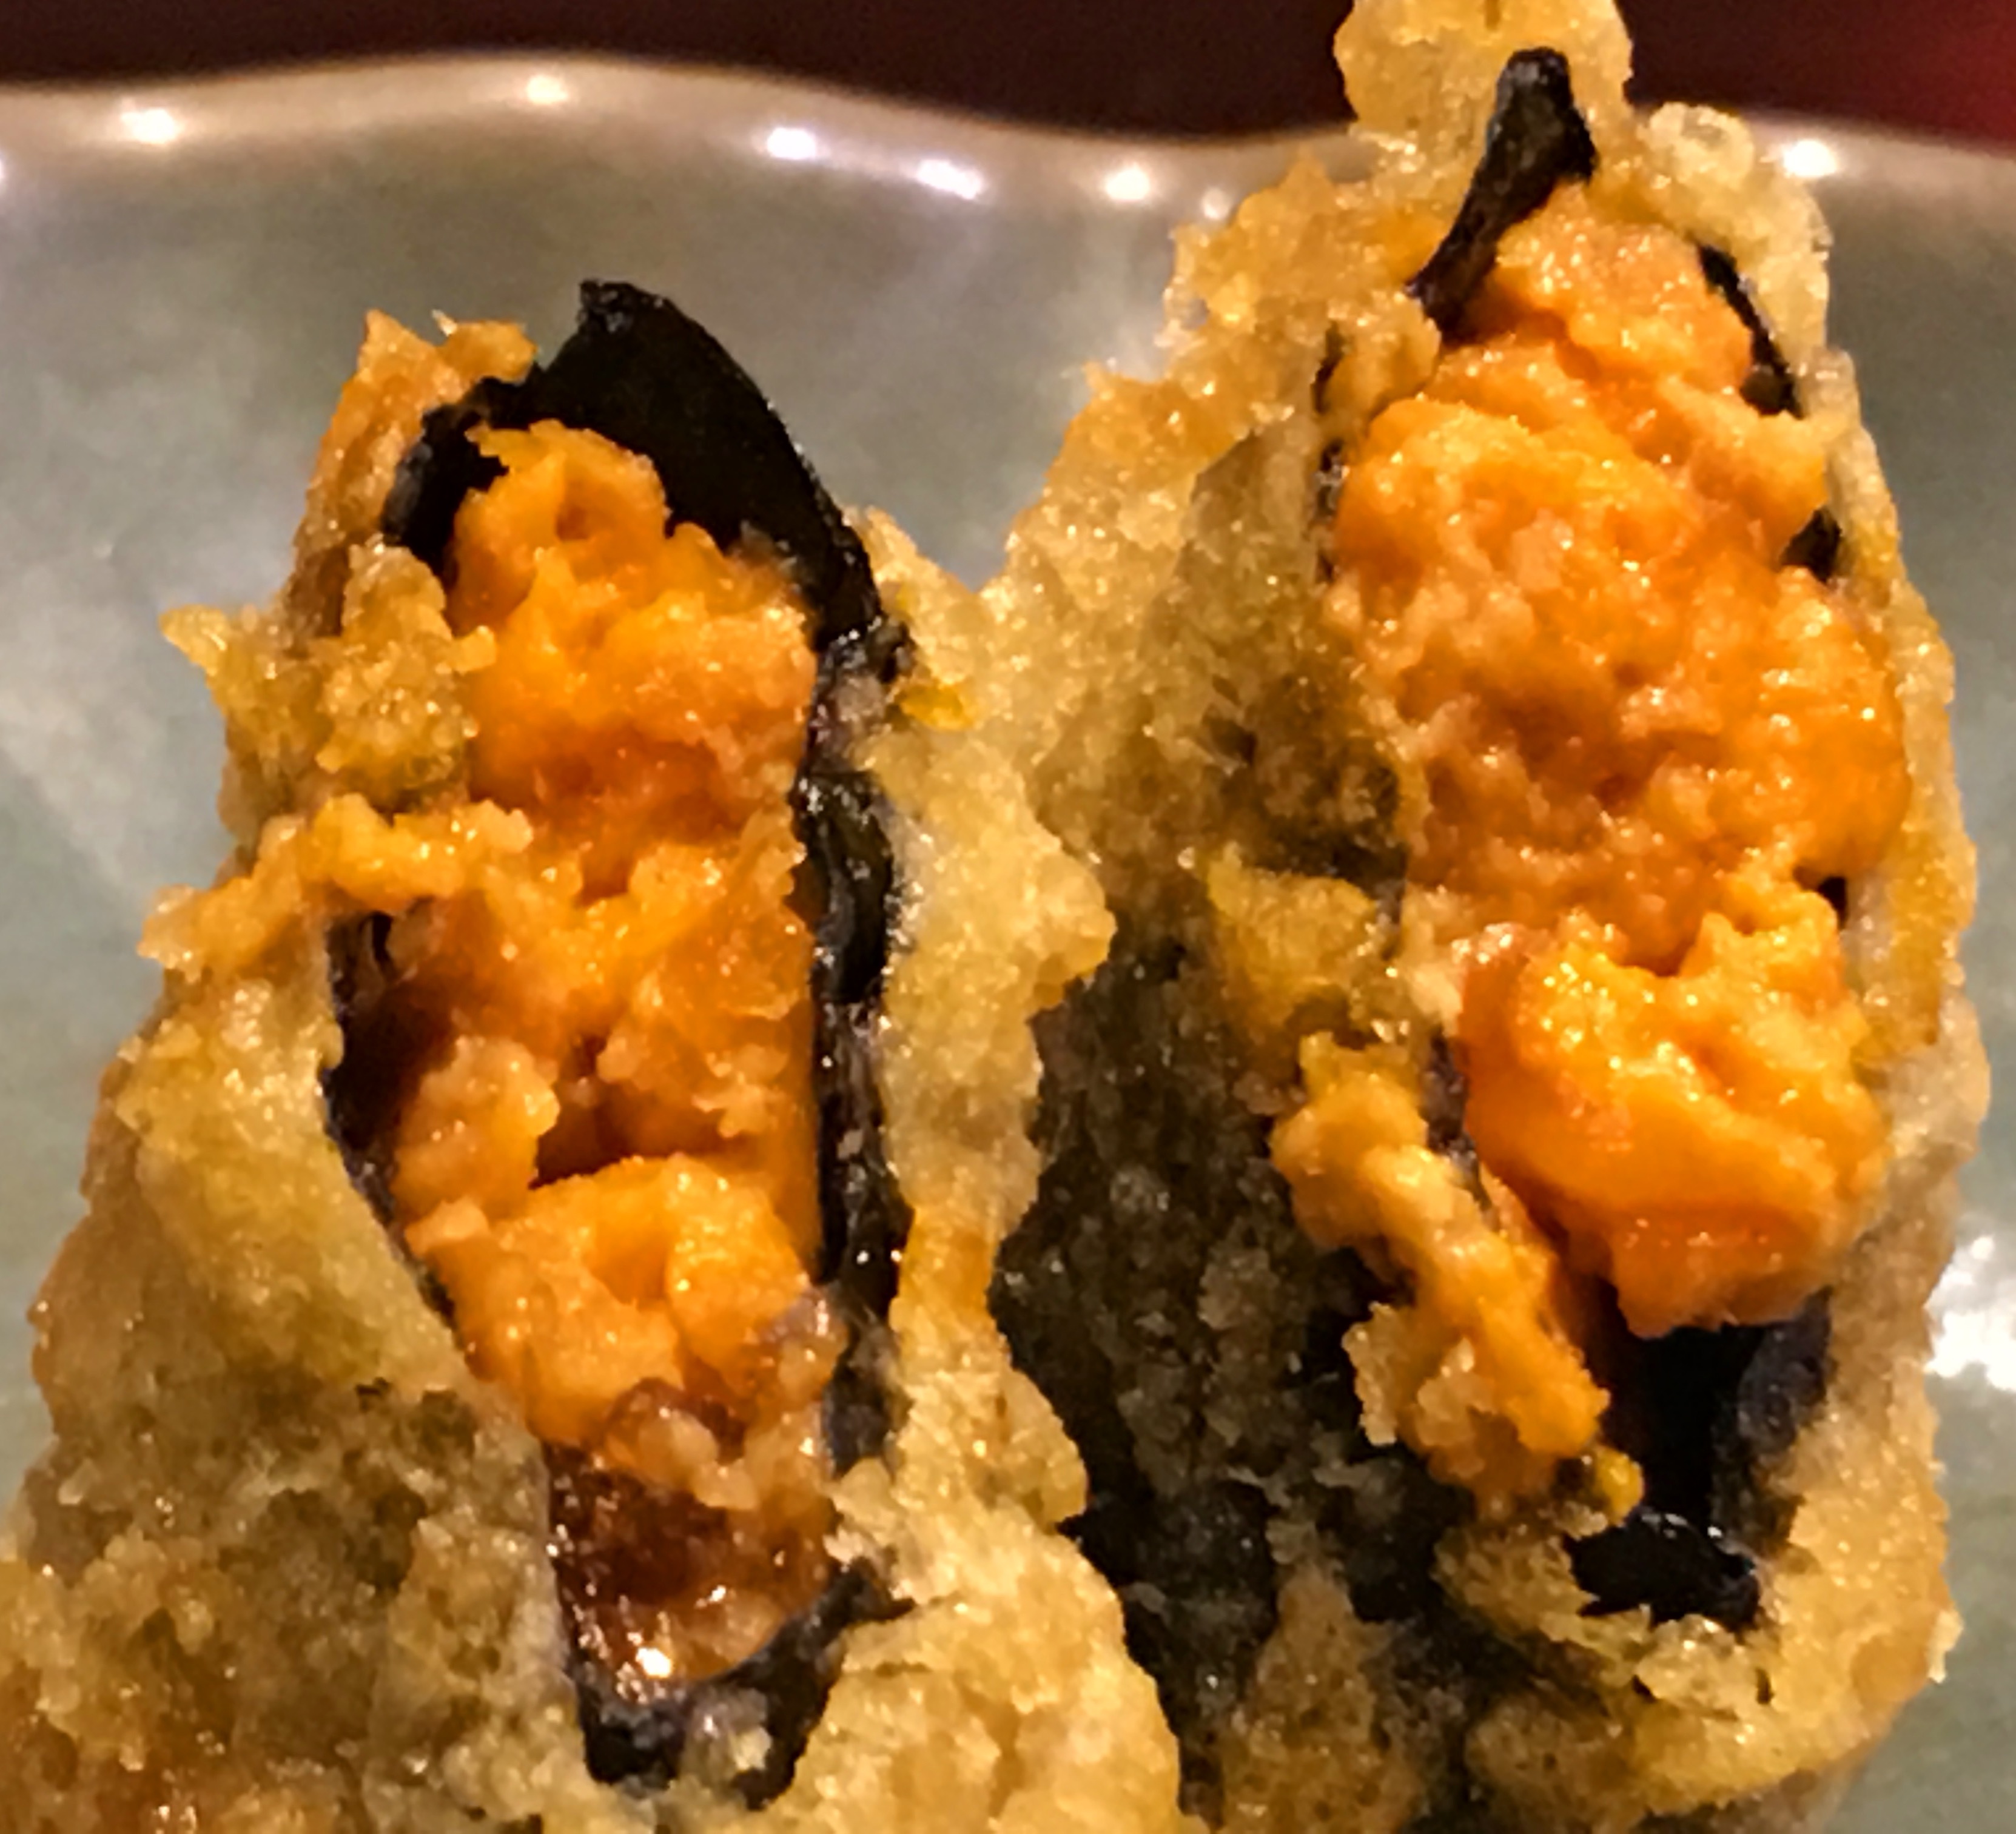 鮟鱇 Anglerfish 大阪 心斎橋の美味しいあん肝鍋が食べられる和食店